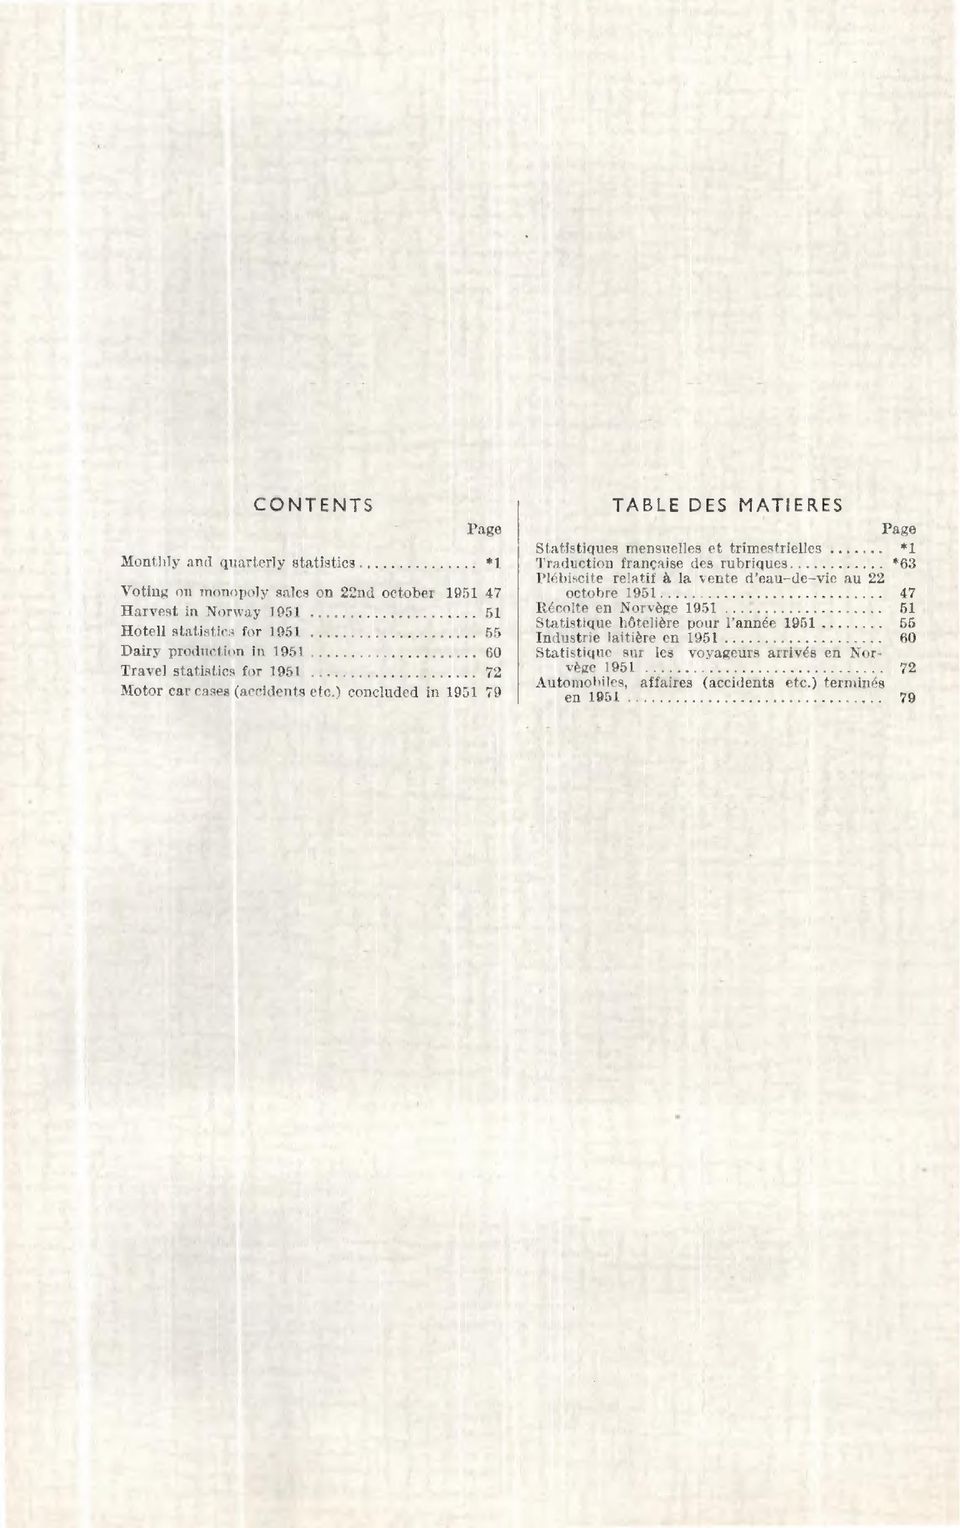 51 Statistique hôtelière pour l'année 1951 55 Hotell statistics for 1951 65 Industrie laitière en 1951 60 Dairy production in 1951 60 Statistique sur les voyageurs